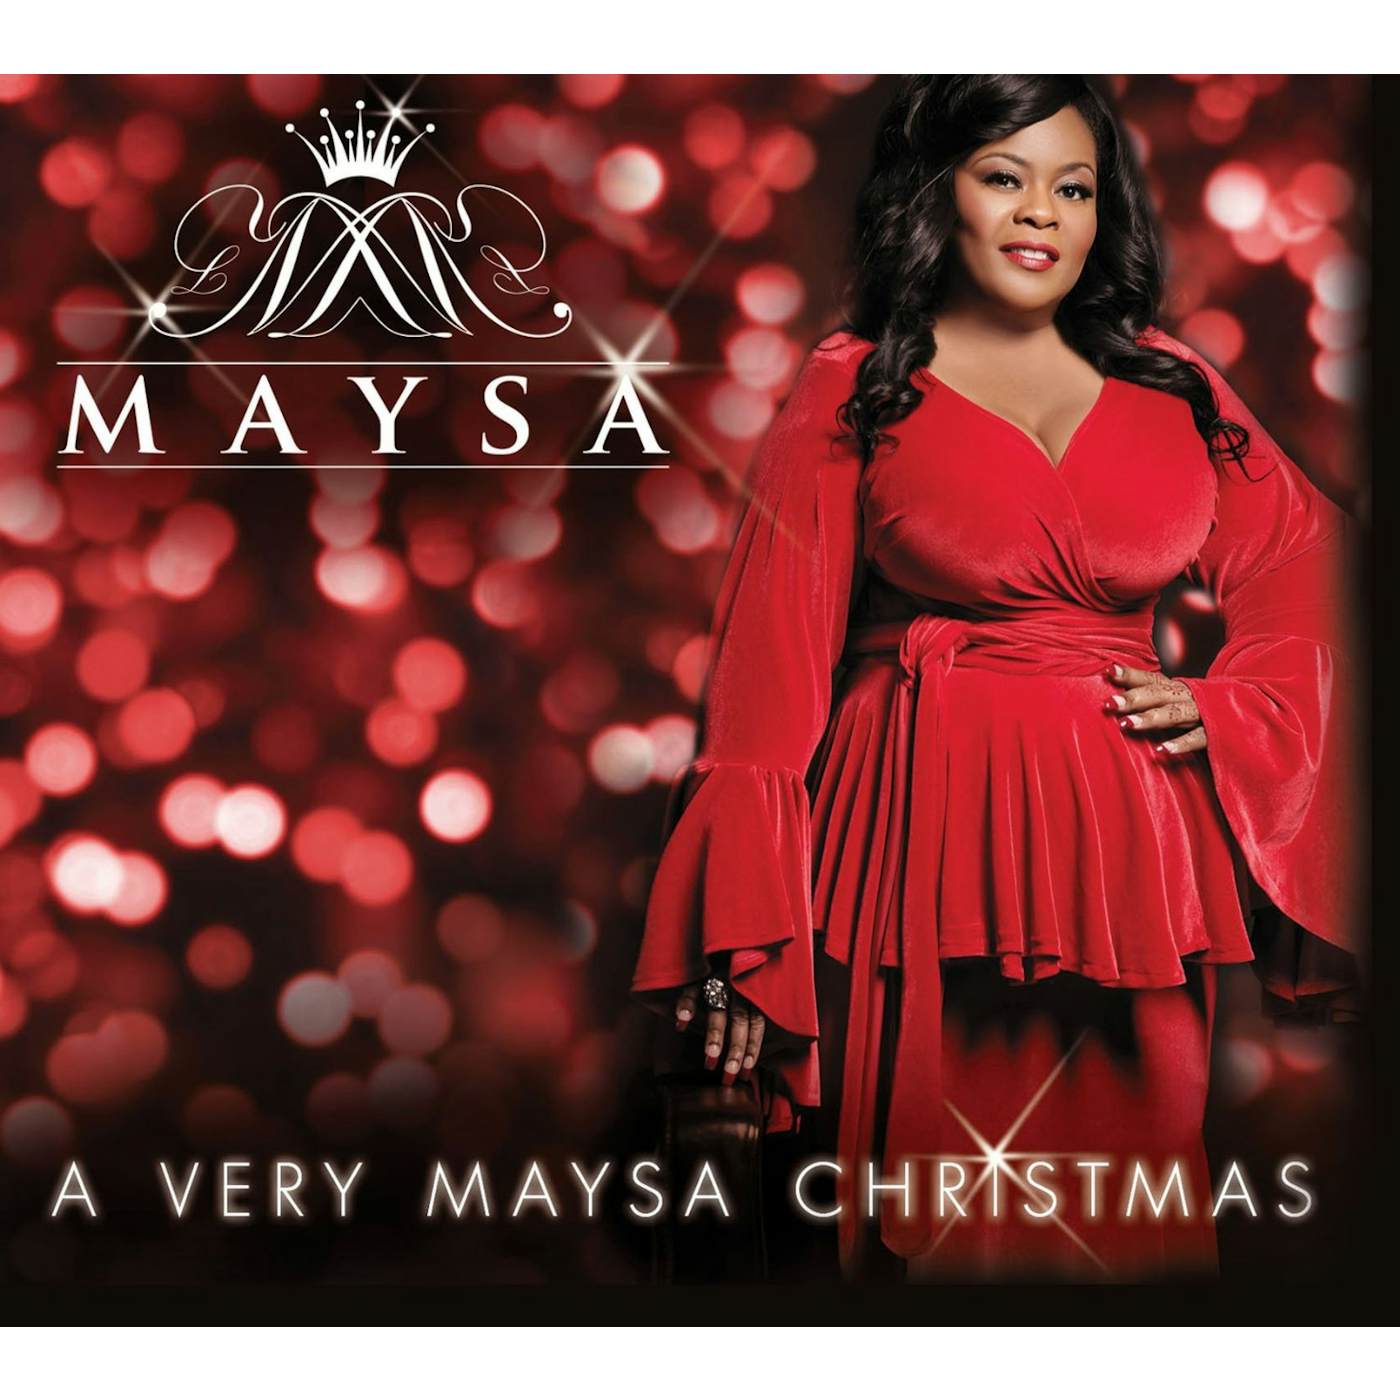 VERY MAYSA CHRISTMAS CD